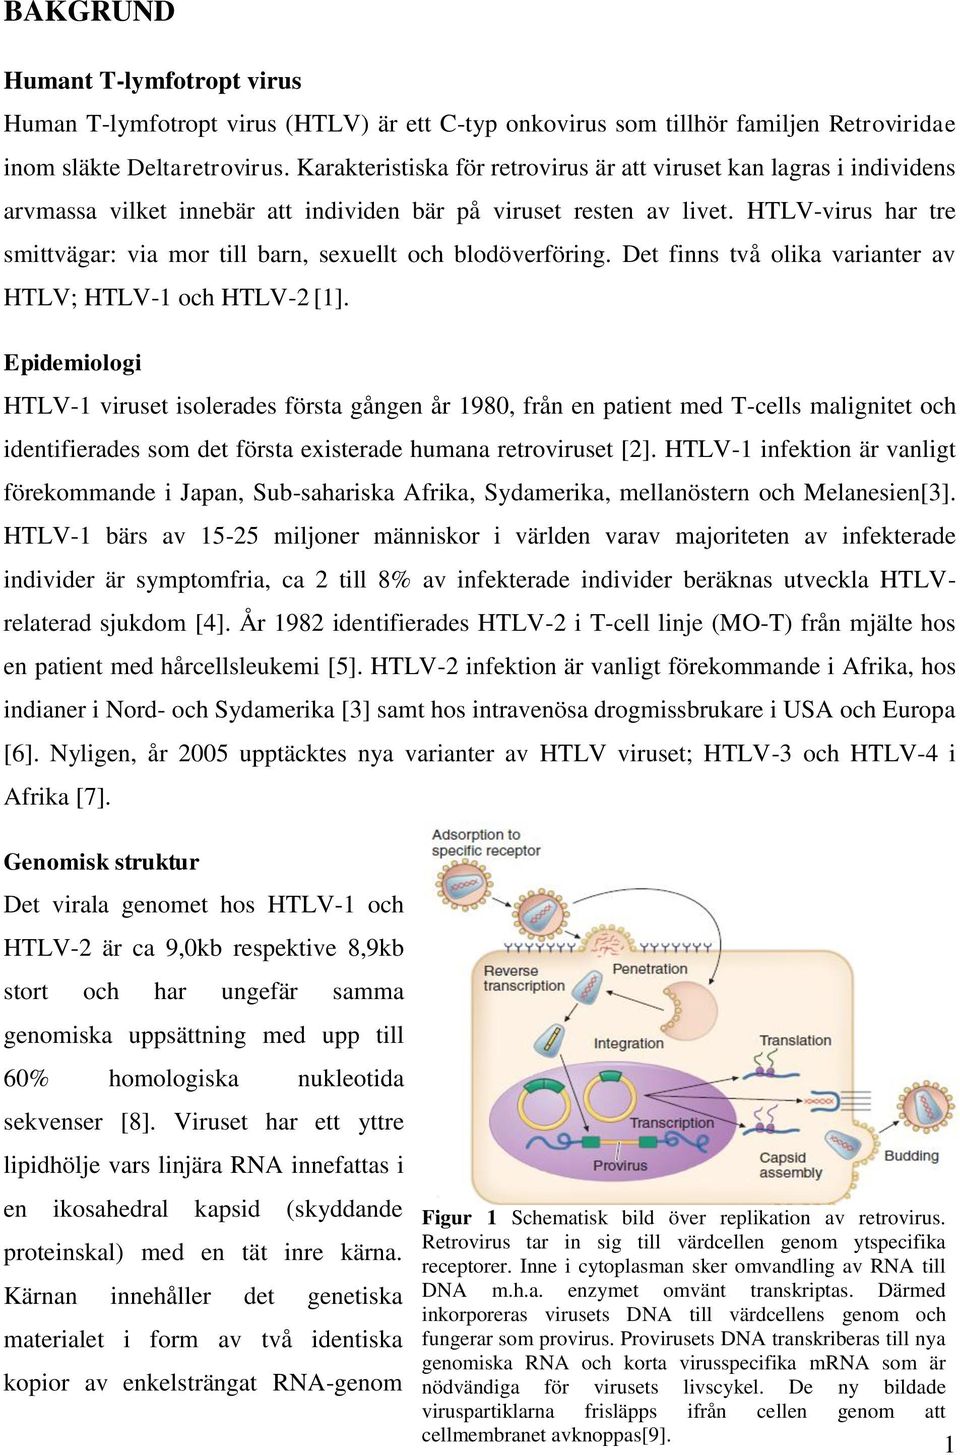 HTLV-virus har tre smittvägar: via mor till barn, sexuellt och blodöverföring. Det finns två olika varianter av HTLV; HTLV-1 och HTLV-2 [1].